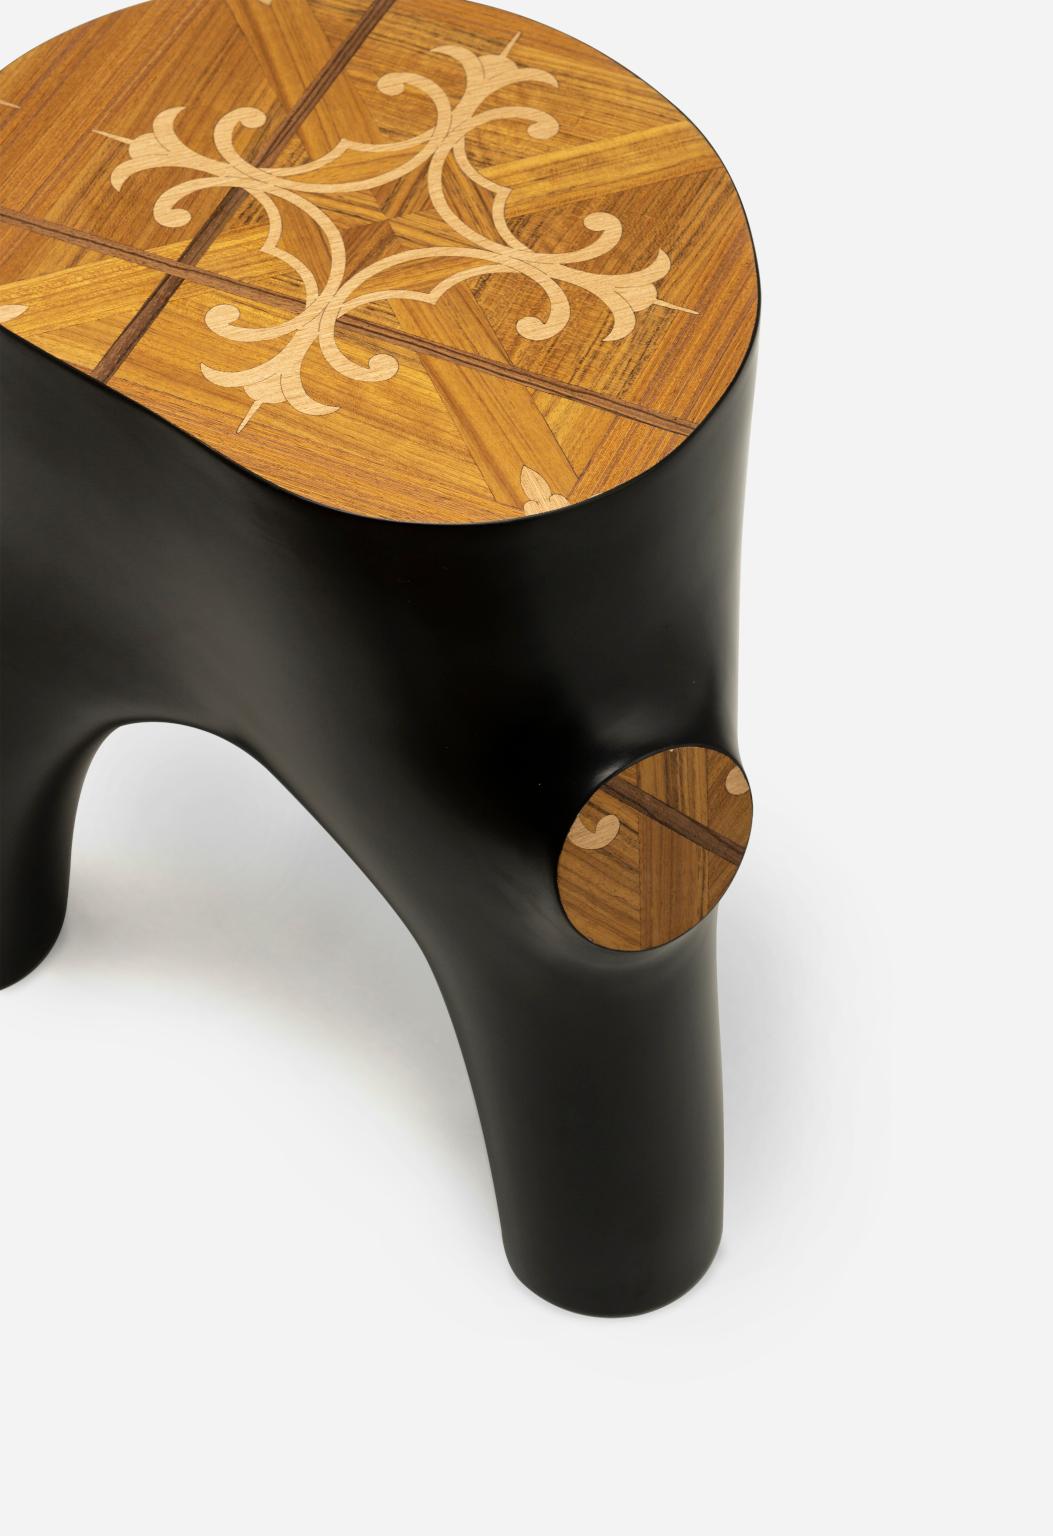 Souche
Stump è uno tavolino o sgabello che imita le forme organiche dei ceppi di legno e delle
loro radici. Le piano, conçu avec des motifs florentins, a été réalisé selon diverses techniques
di legno.
Stump est une table d'appoint ou un